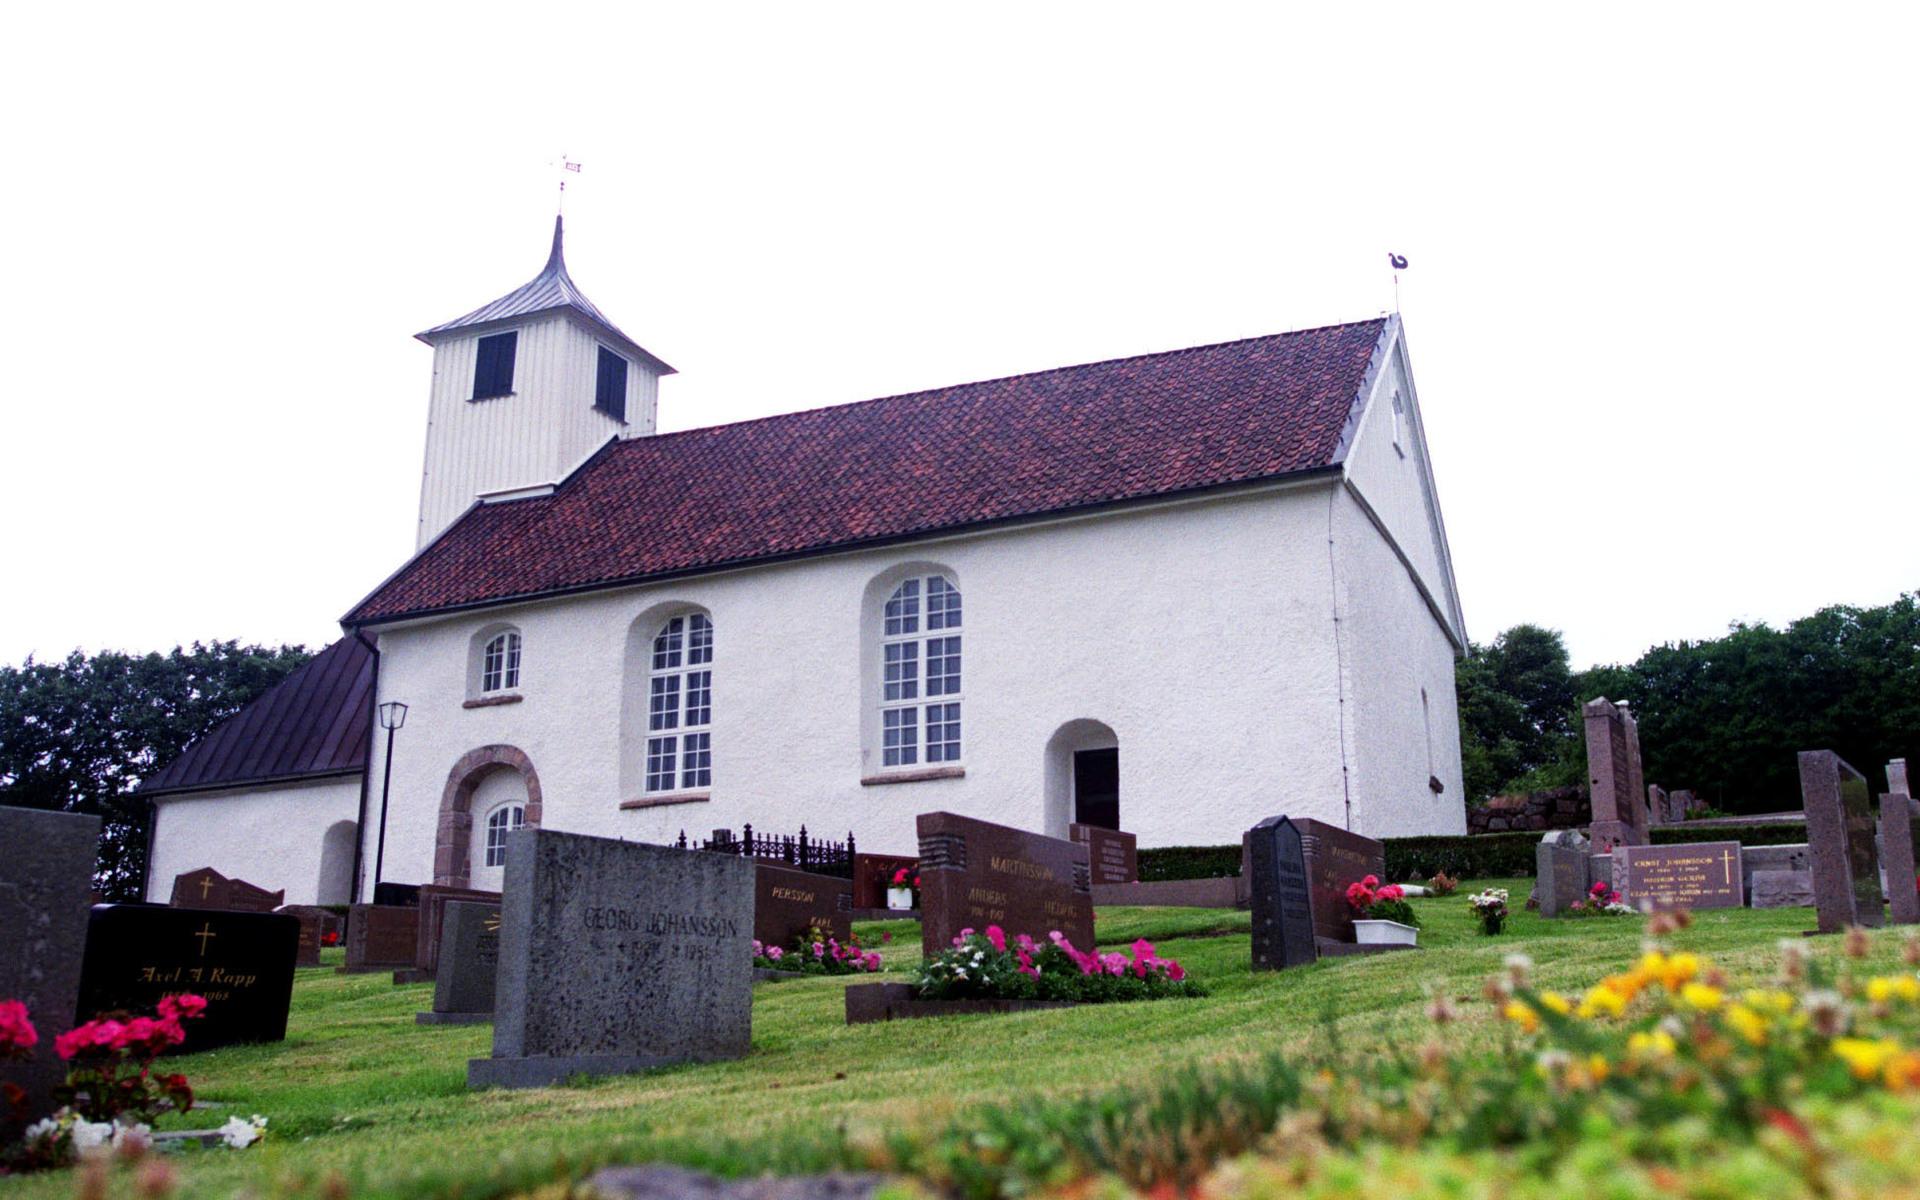 Bottna kyrka i Tanum är en av de tre kyrkorna i Bohuslän som råkat ut för tjuvar. De övriga är Askums kyrka i Sotenäs och Brastad kyrka i Lysekil.